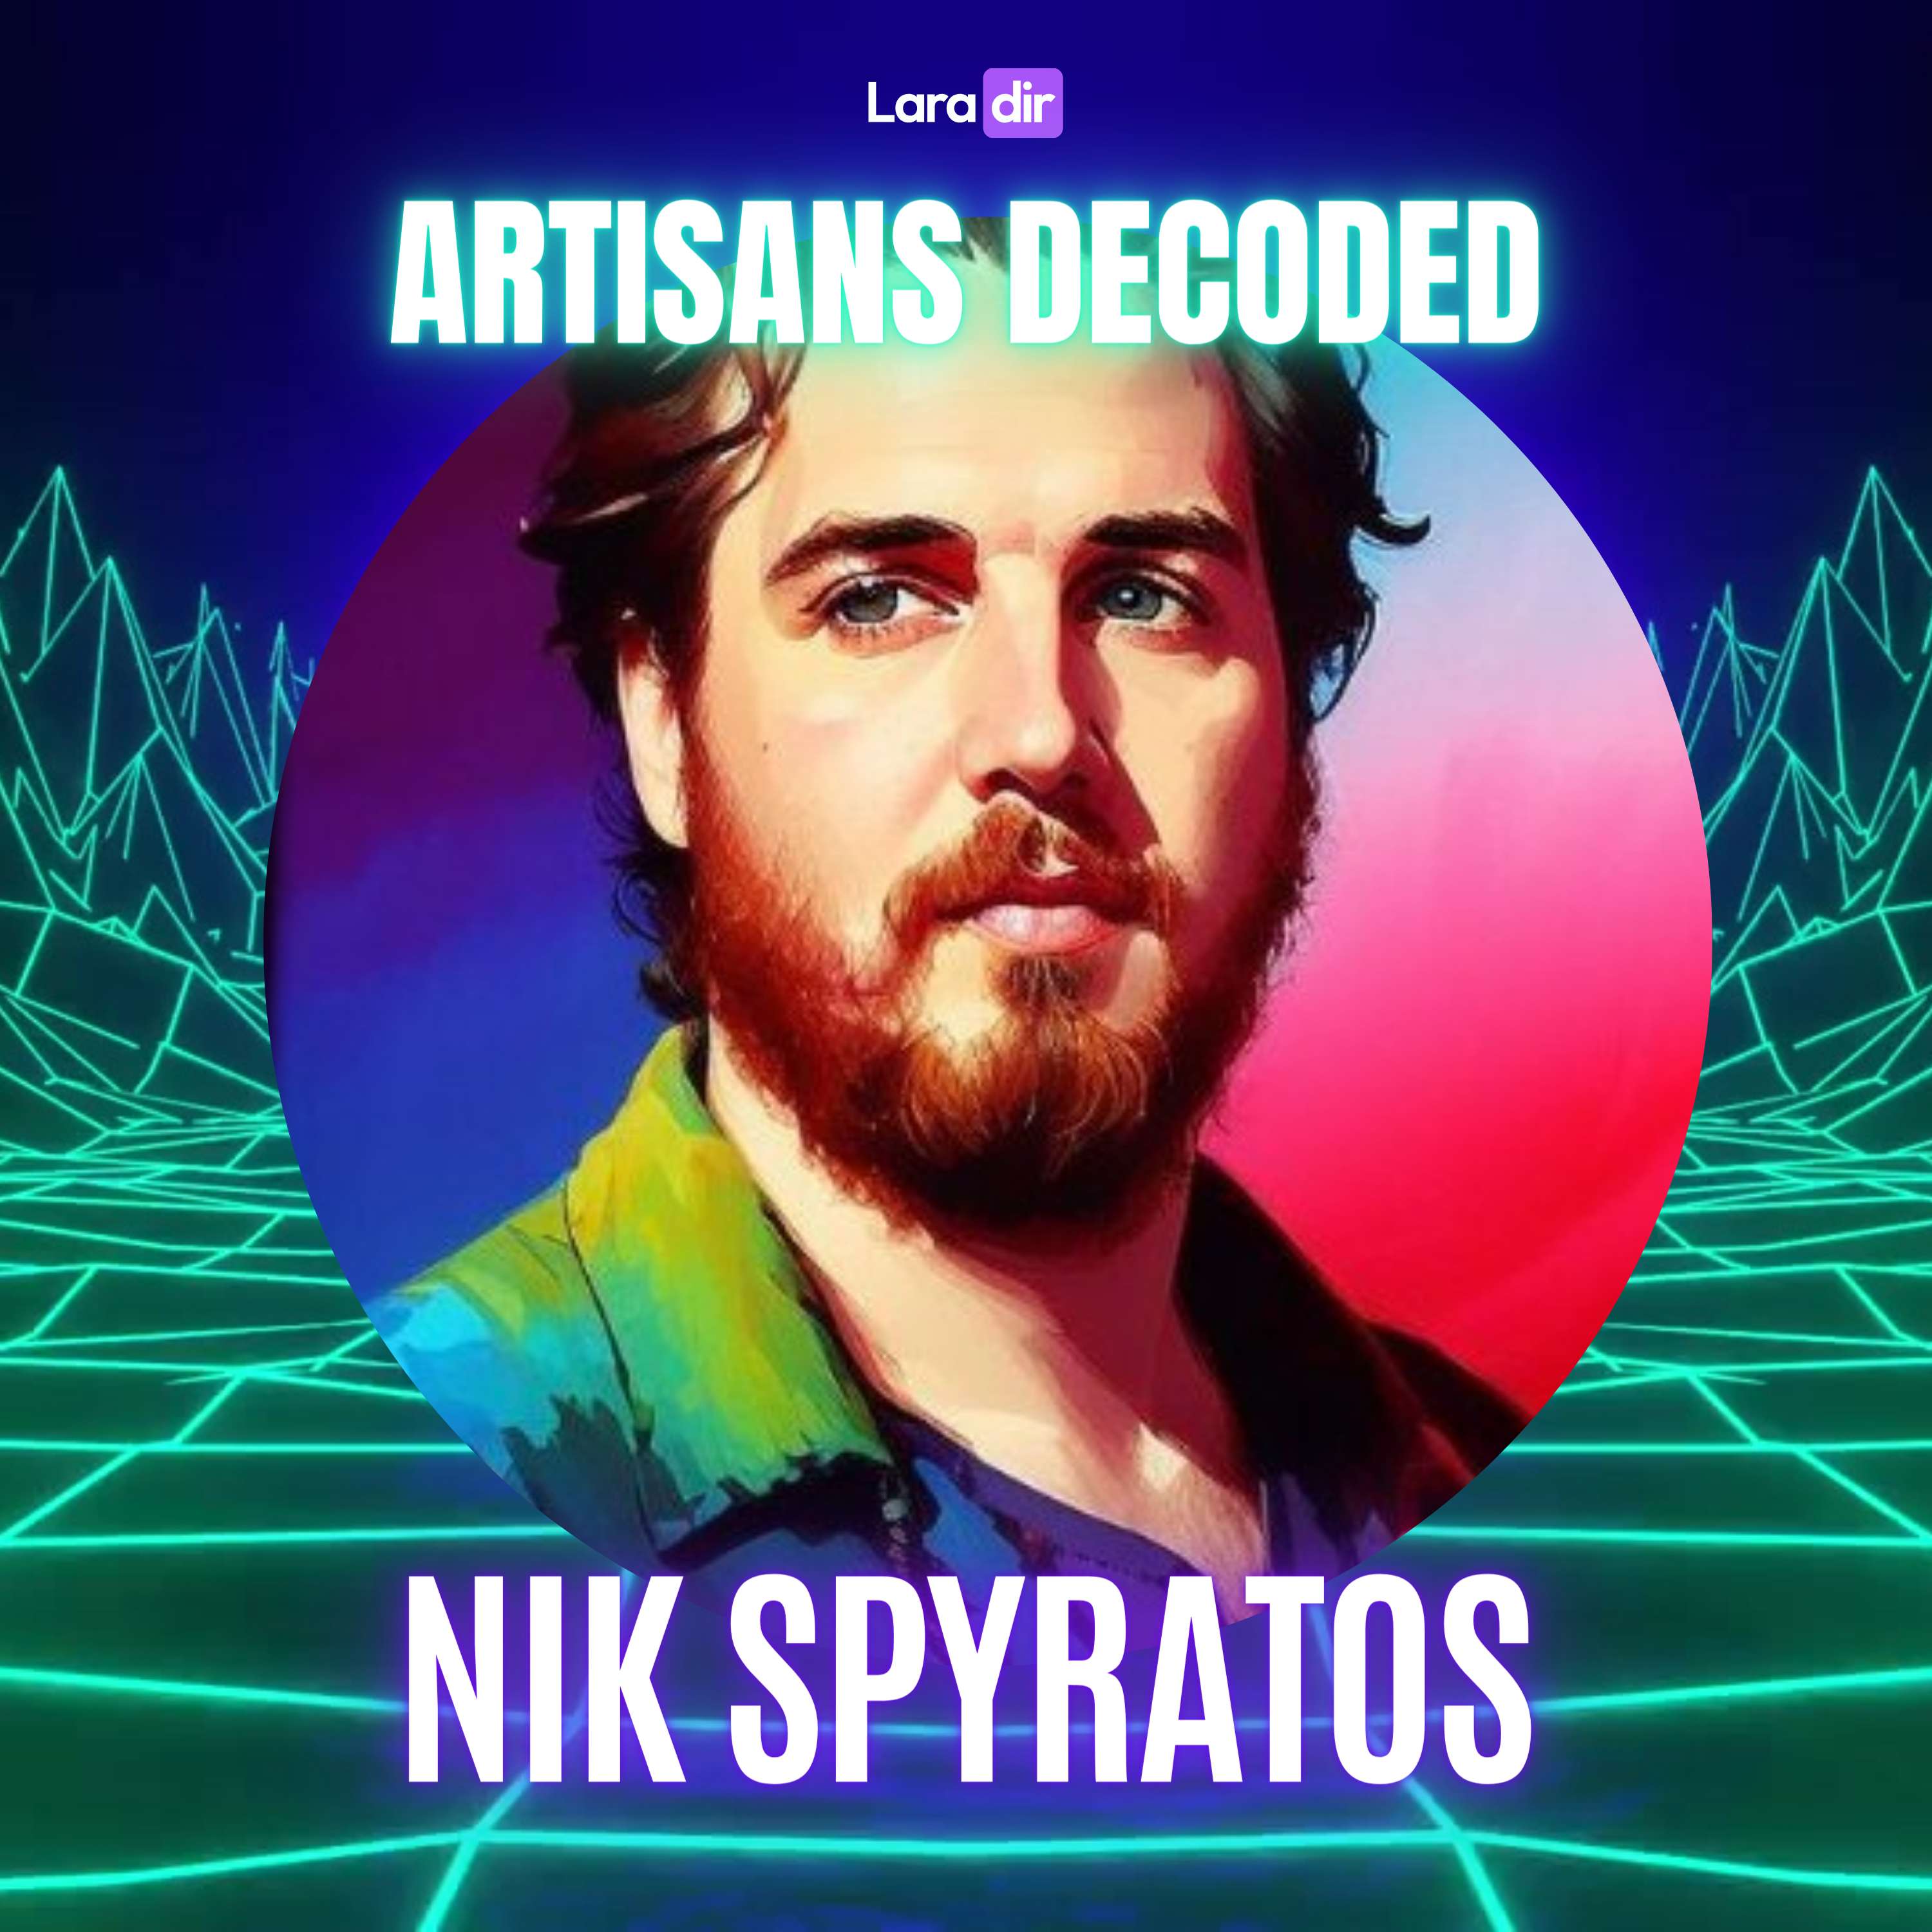 Nik Spyratos